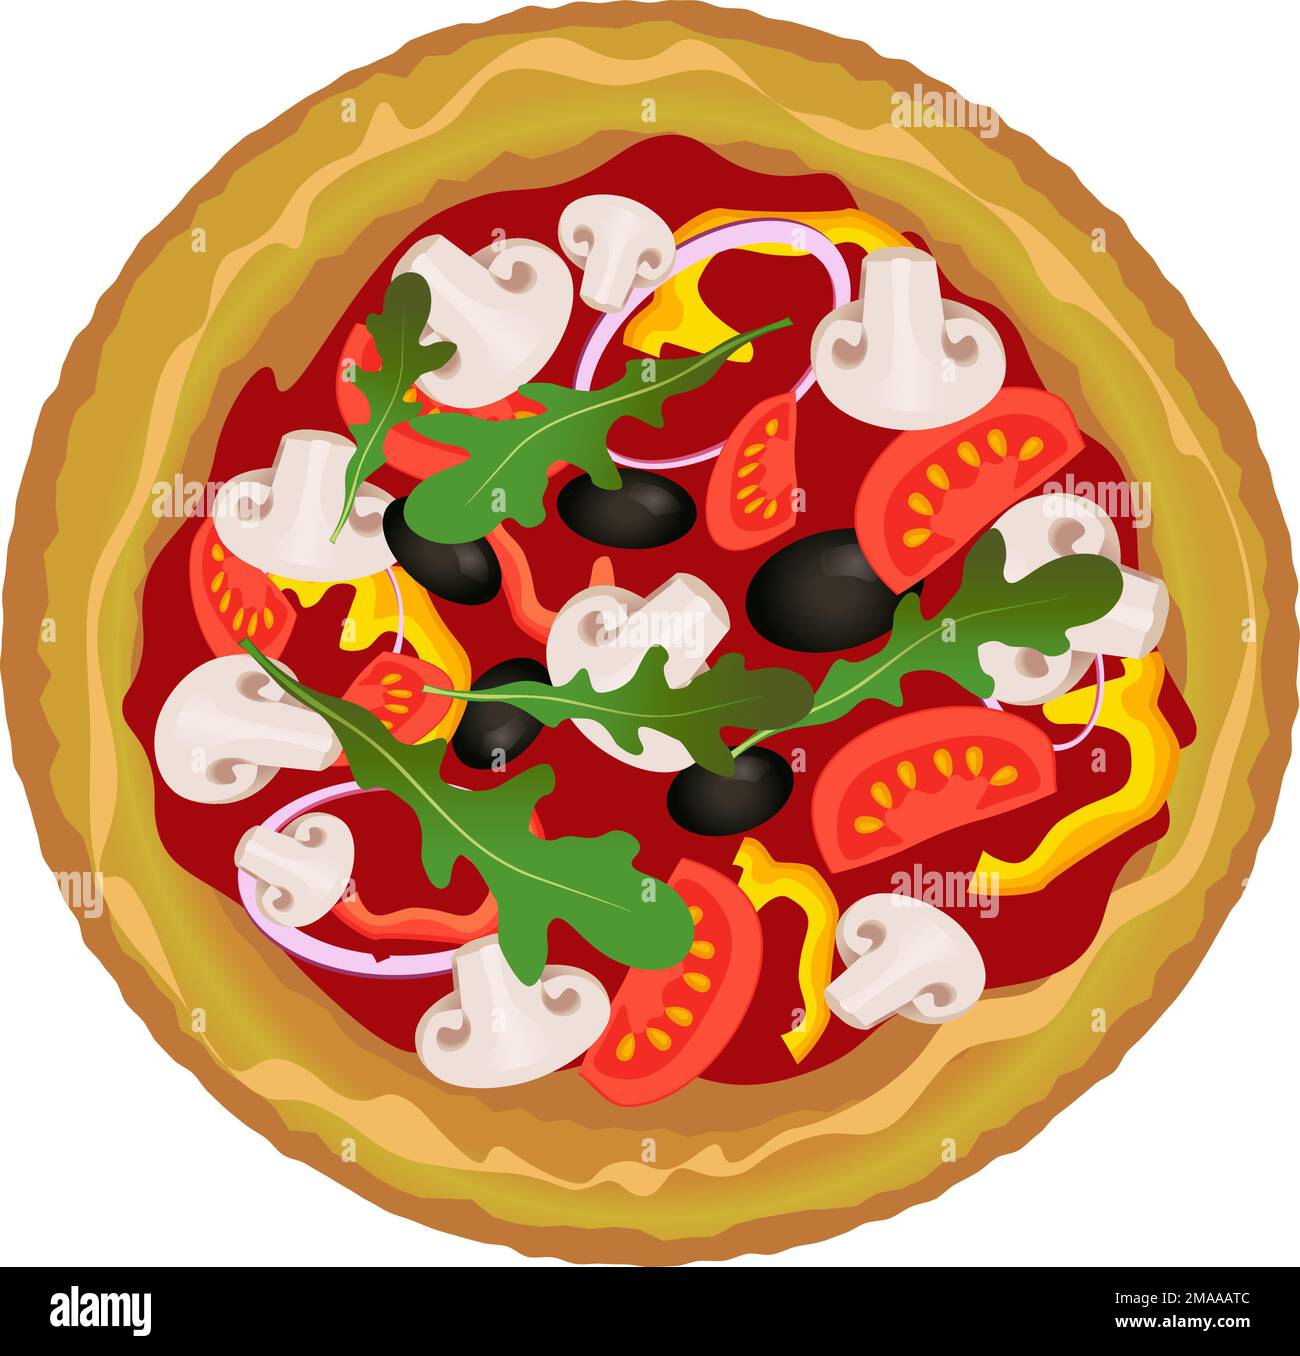 Pizza réaliste avec oignon, tomate, olive, arugula, champignons dessin isolé de style plat sur un fond transparent Illustration de Vecteur